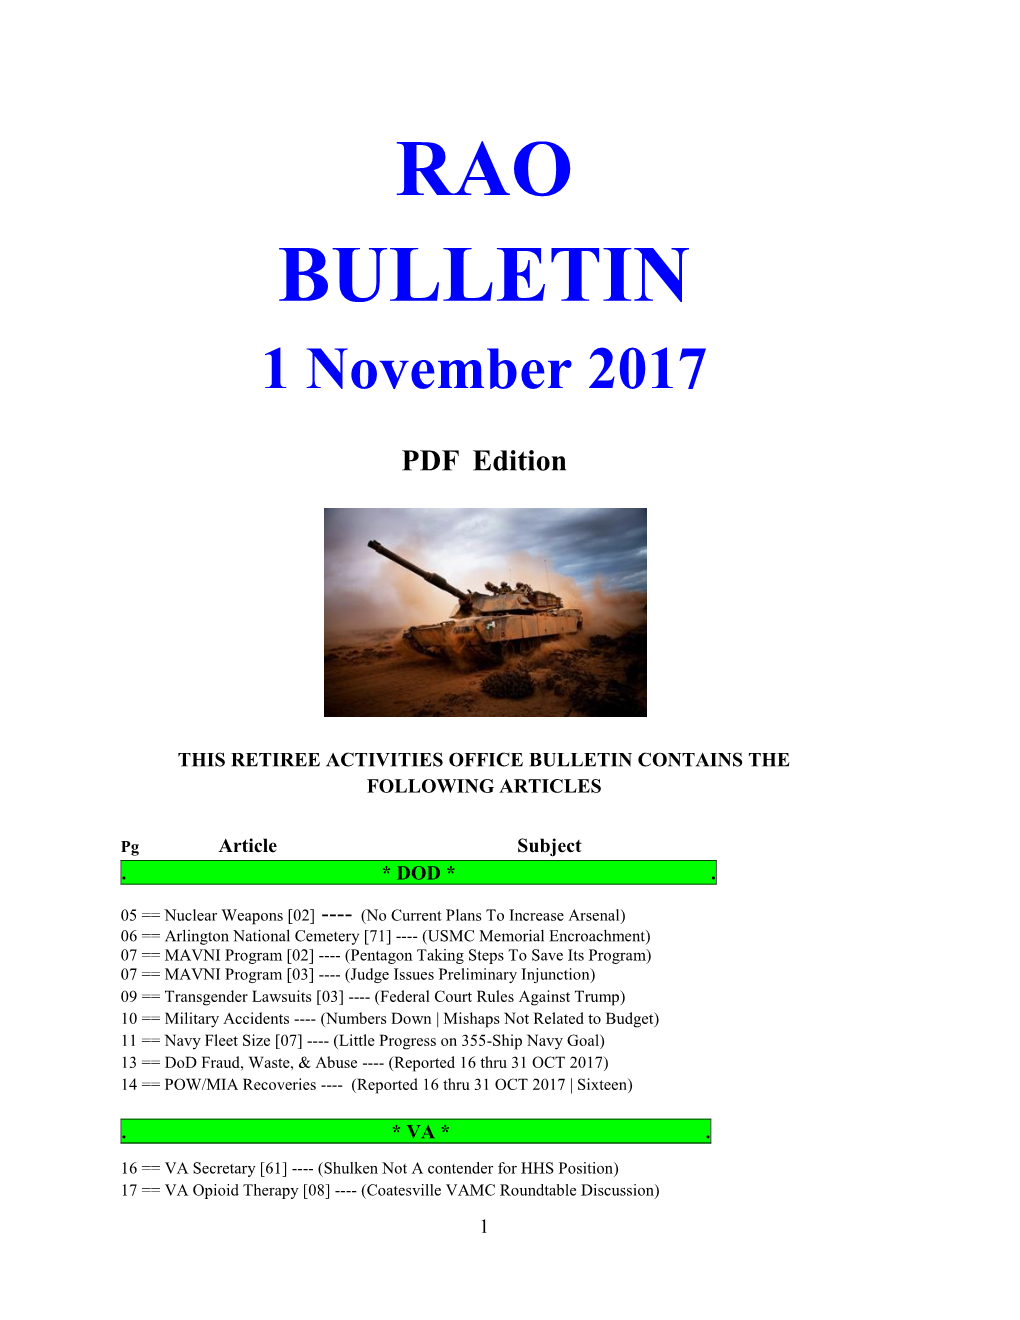 RAO BULLETIN 1 November 2017